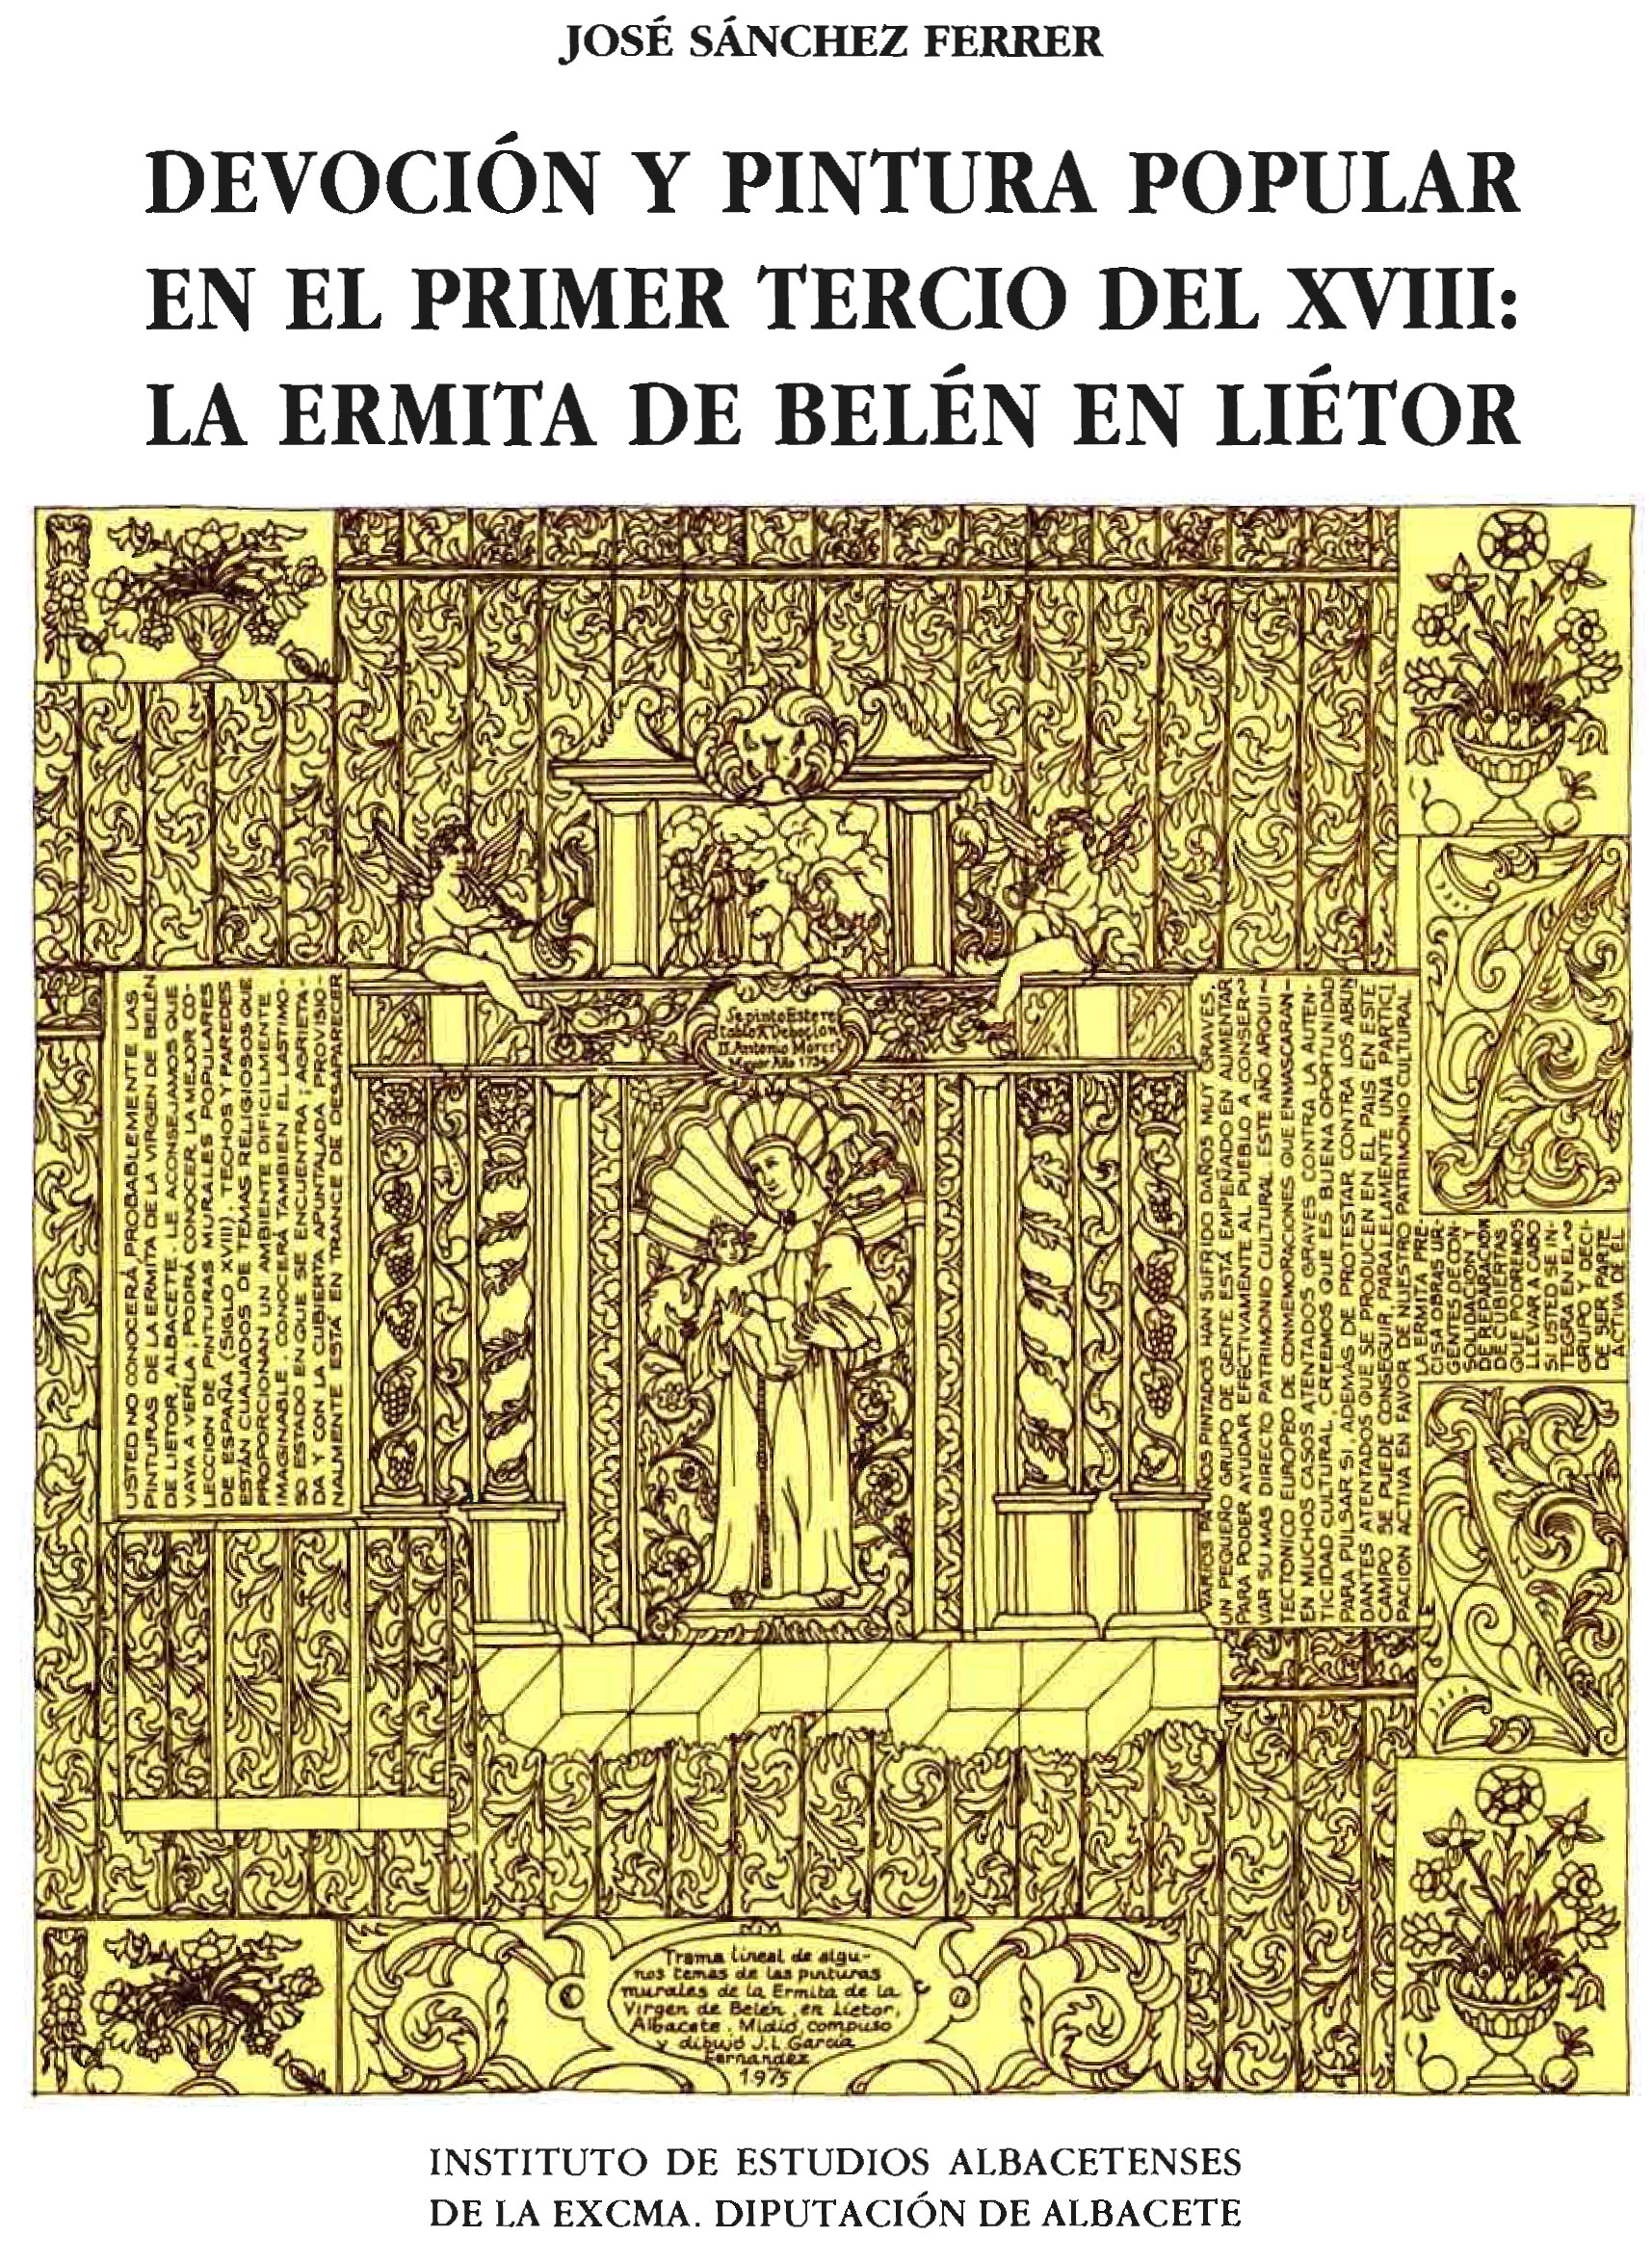 Imagen de portada del libro Devoción y pintura popular en el primer tercio del XVIII